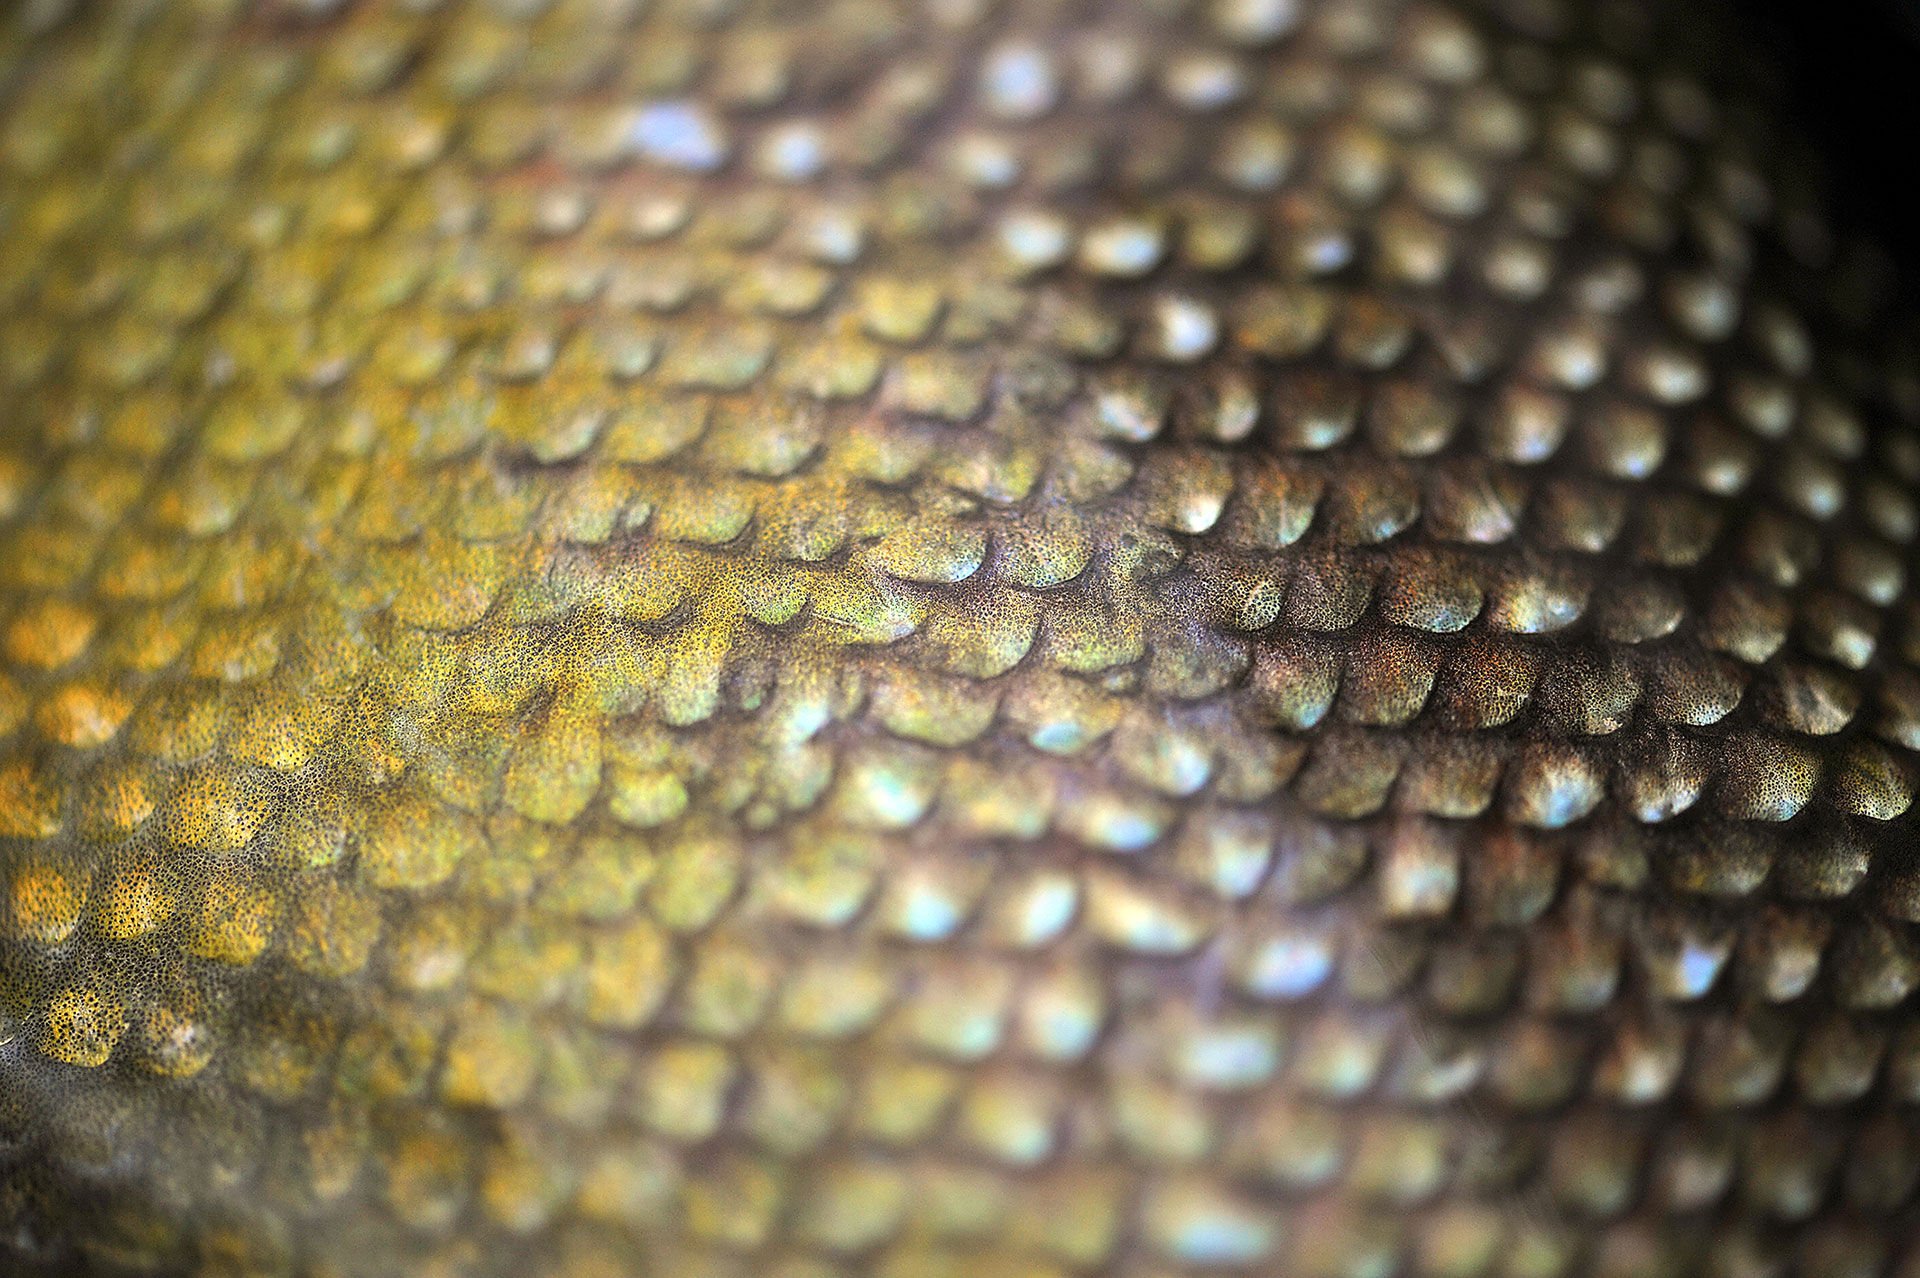  Keine andere Forellenart verfügt über eine solch ausgeprägte Fähigkeit, sich zu tarnen. Die Farbgebung kann entsprechend der Umgebung und Aktivität des Fischs in kürzester Zeit geändert werden und variiert in grünen und orange- goldenen Tönungen.  